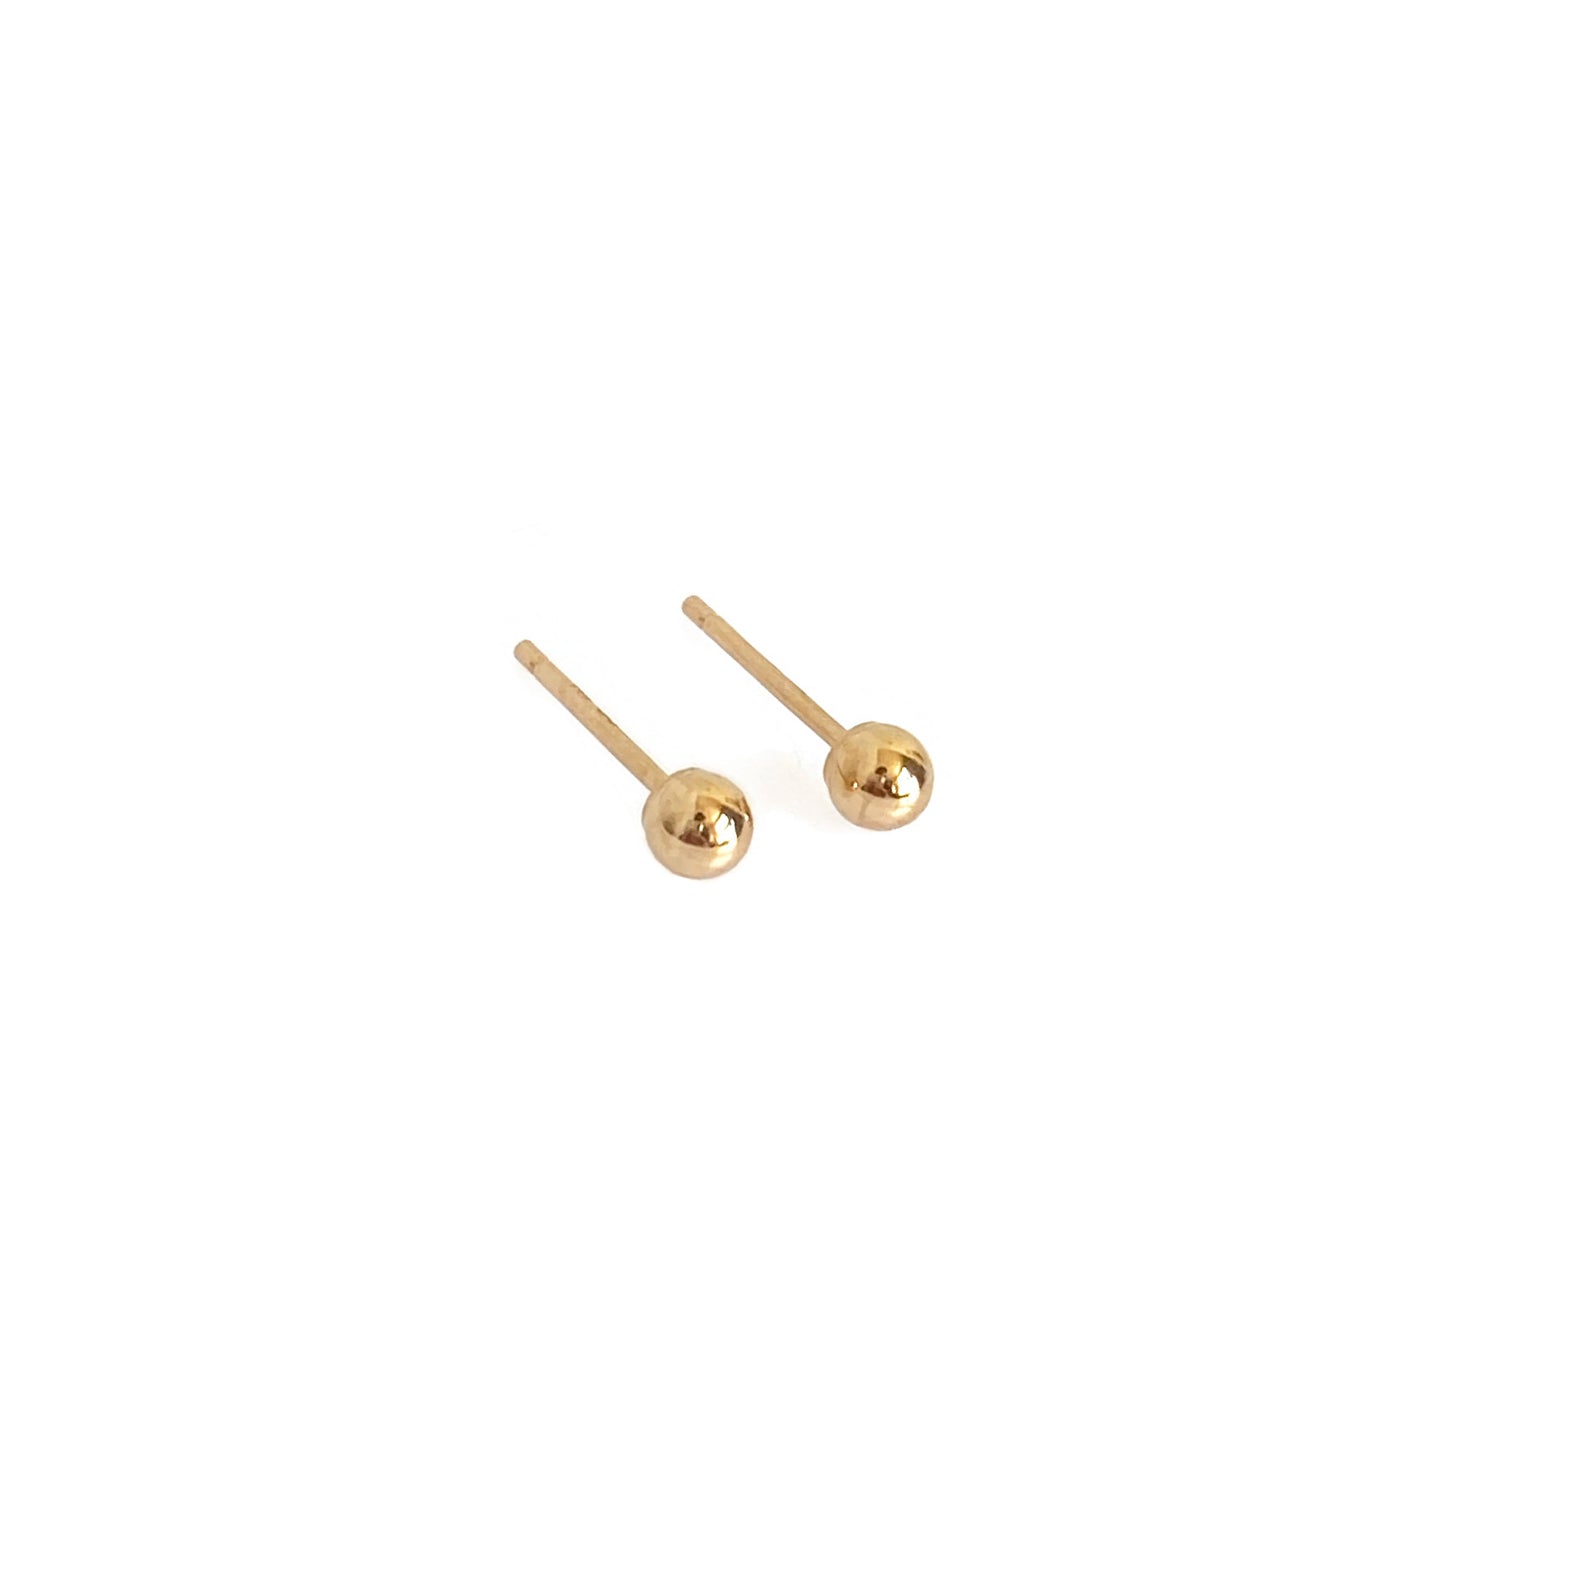 2mm Gold Ball Stud, Earrings for Sensitive Ears